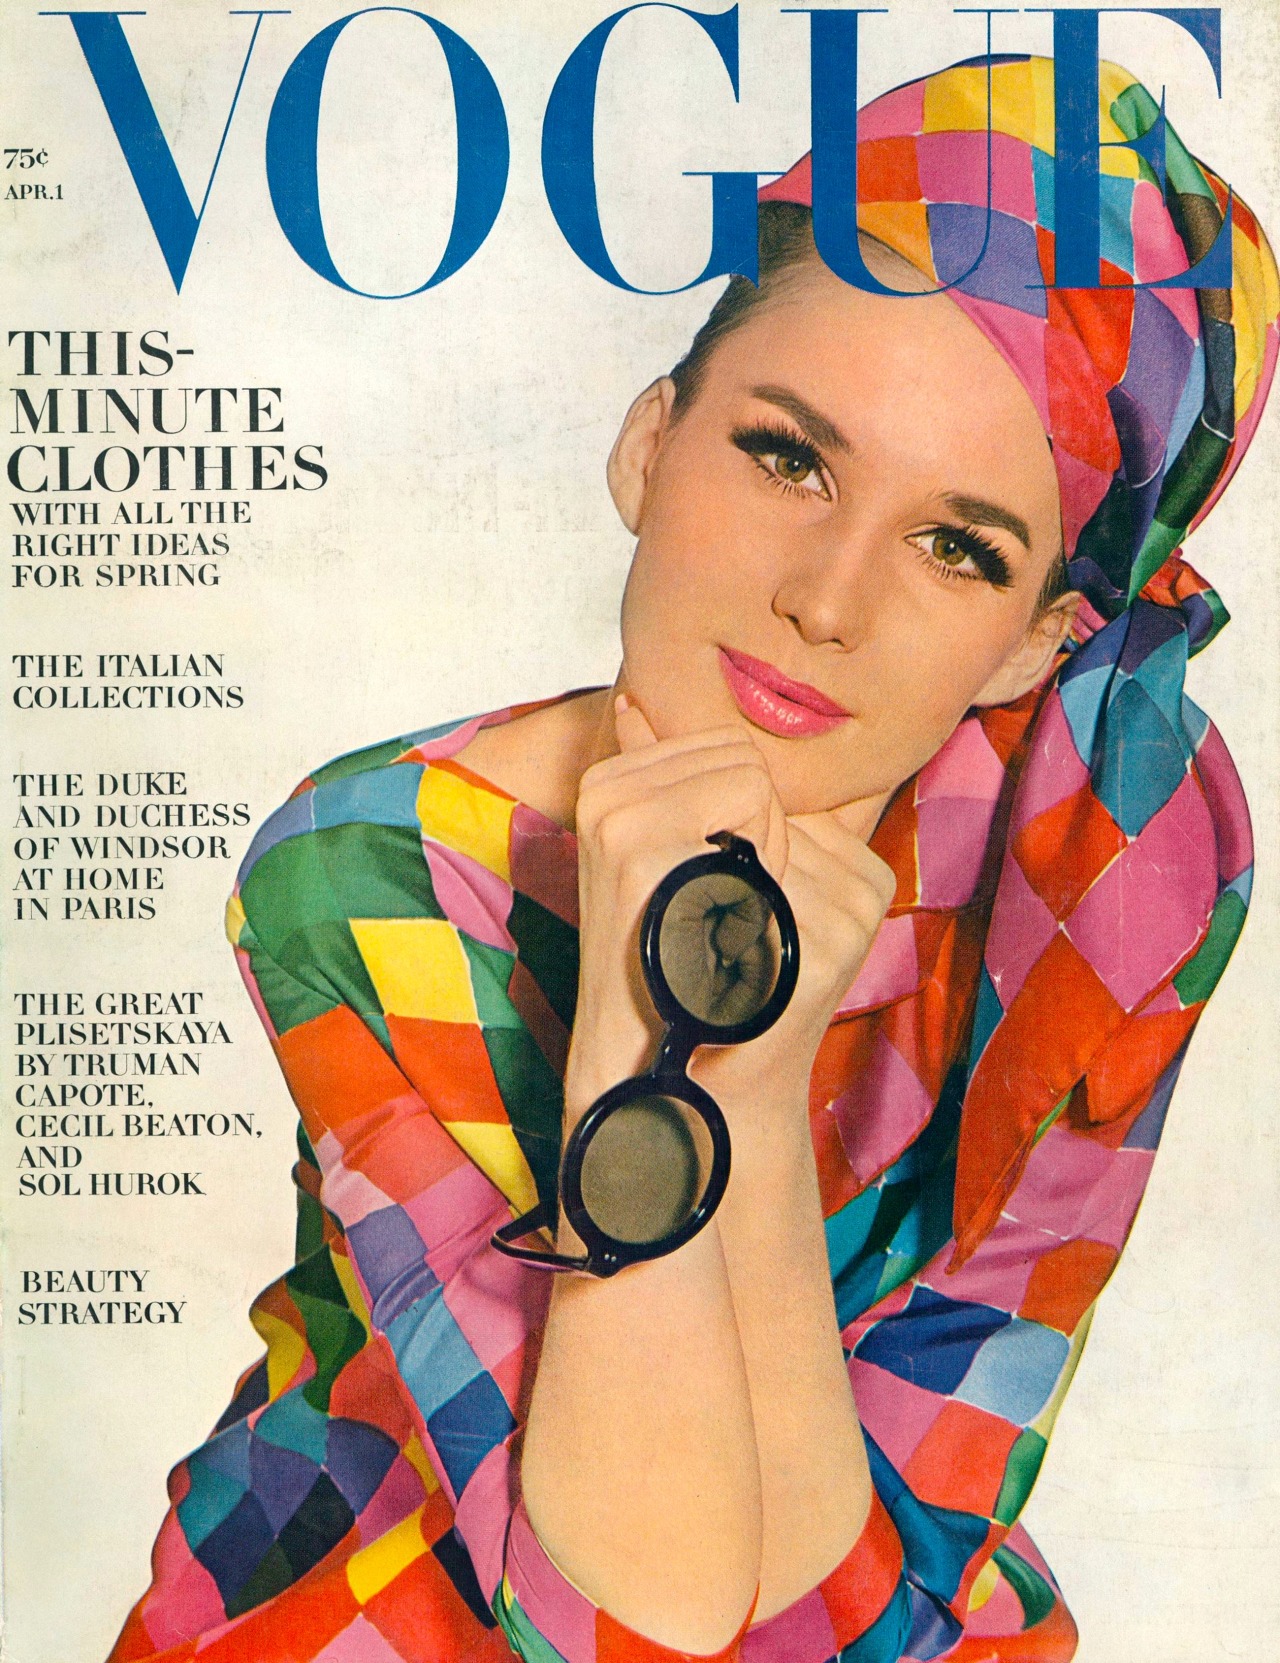 Magazine mode fashion VOGUE US june 1965 Brigitte Bauer 